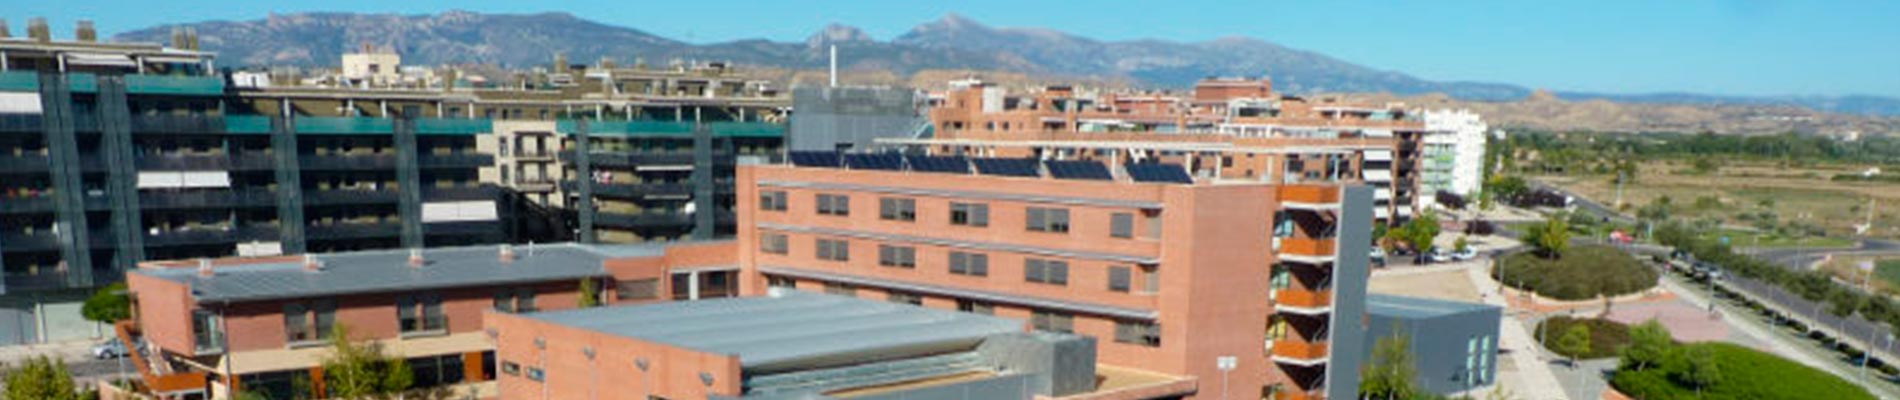 Building for Hermanos de la Cruz Blanca in Huesca